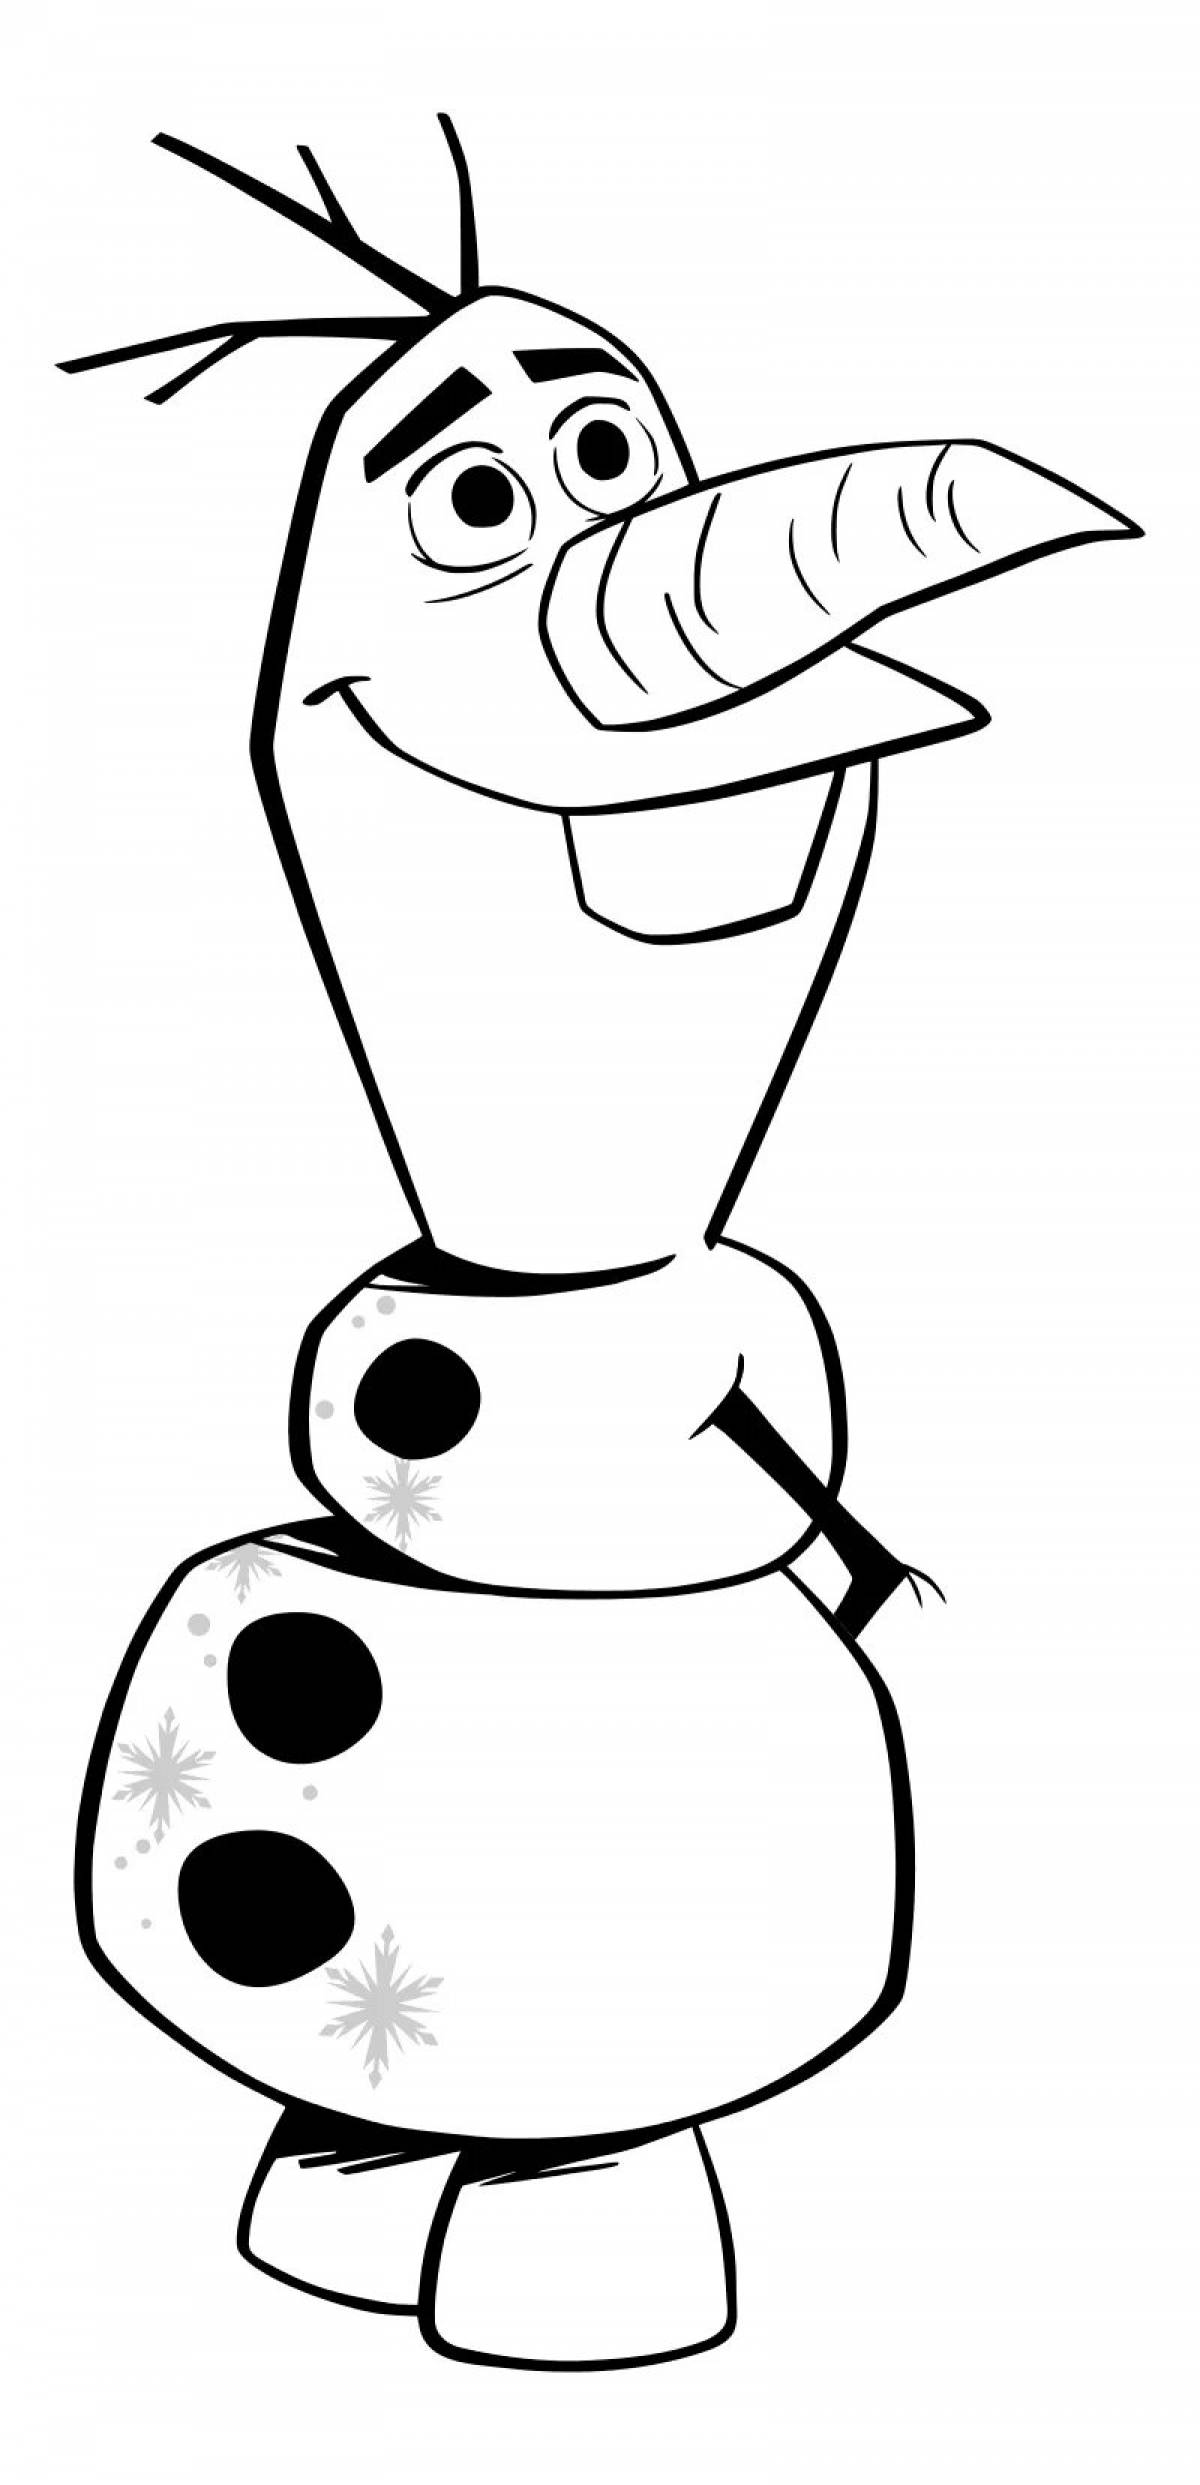 Olaf the snowman #9